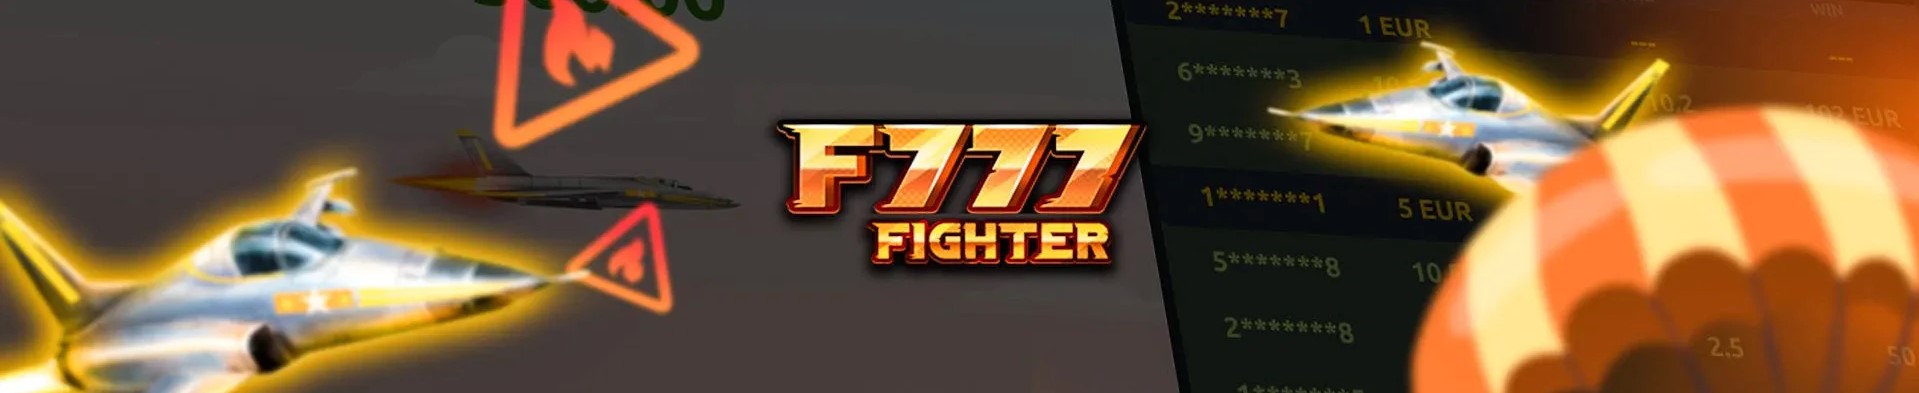 F777 fighter žaidimas.